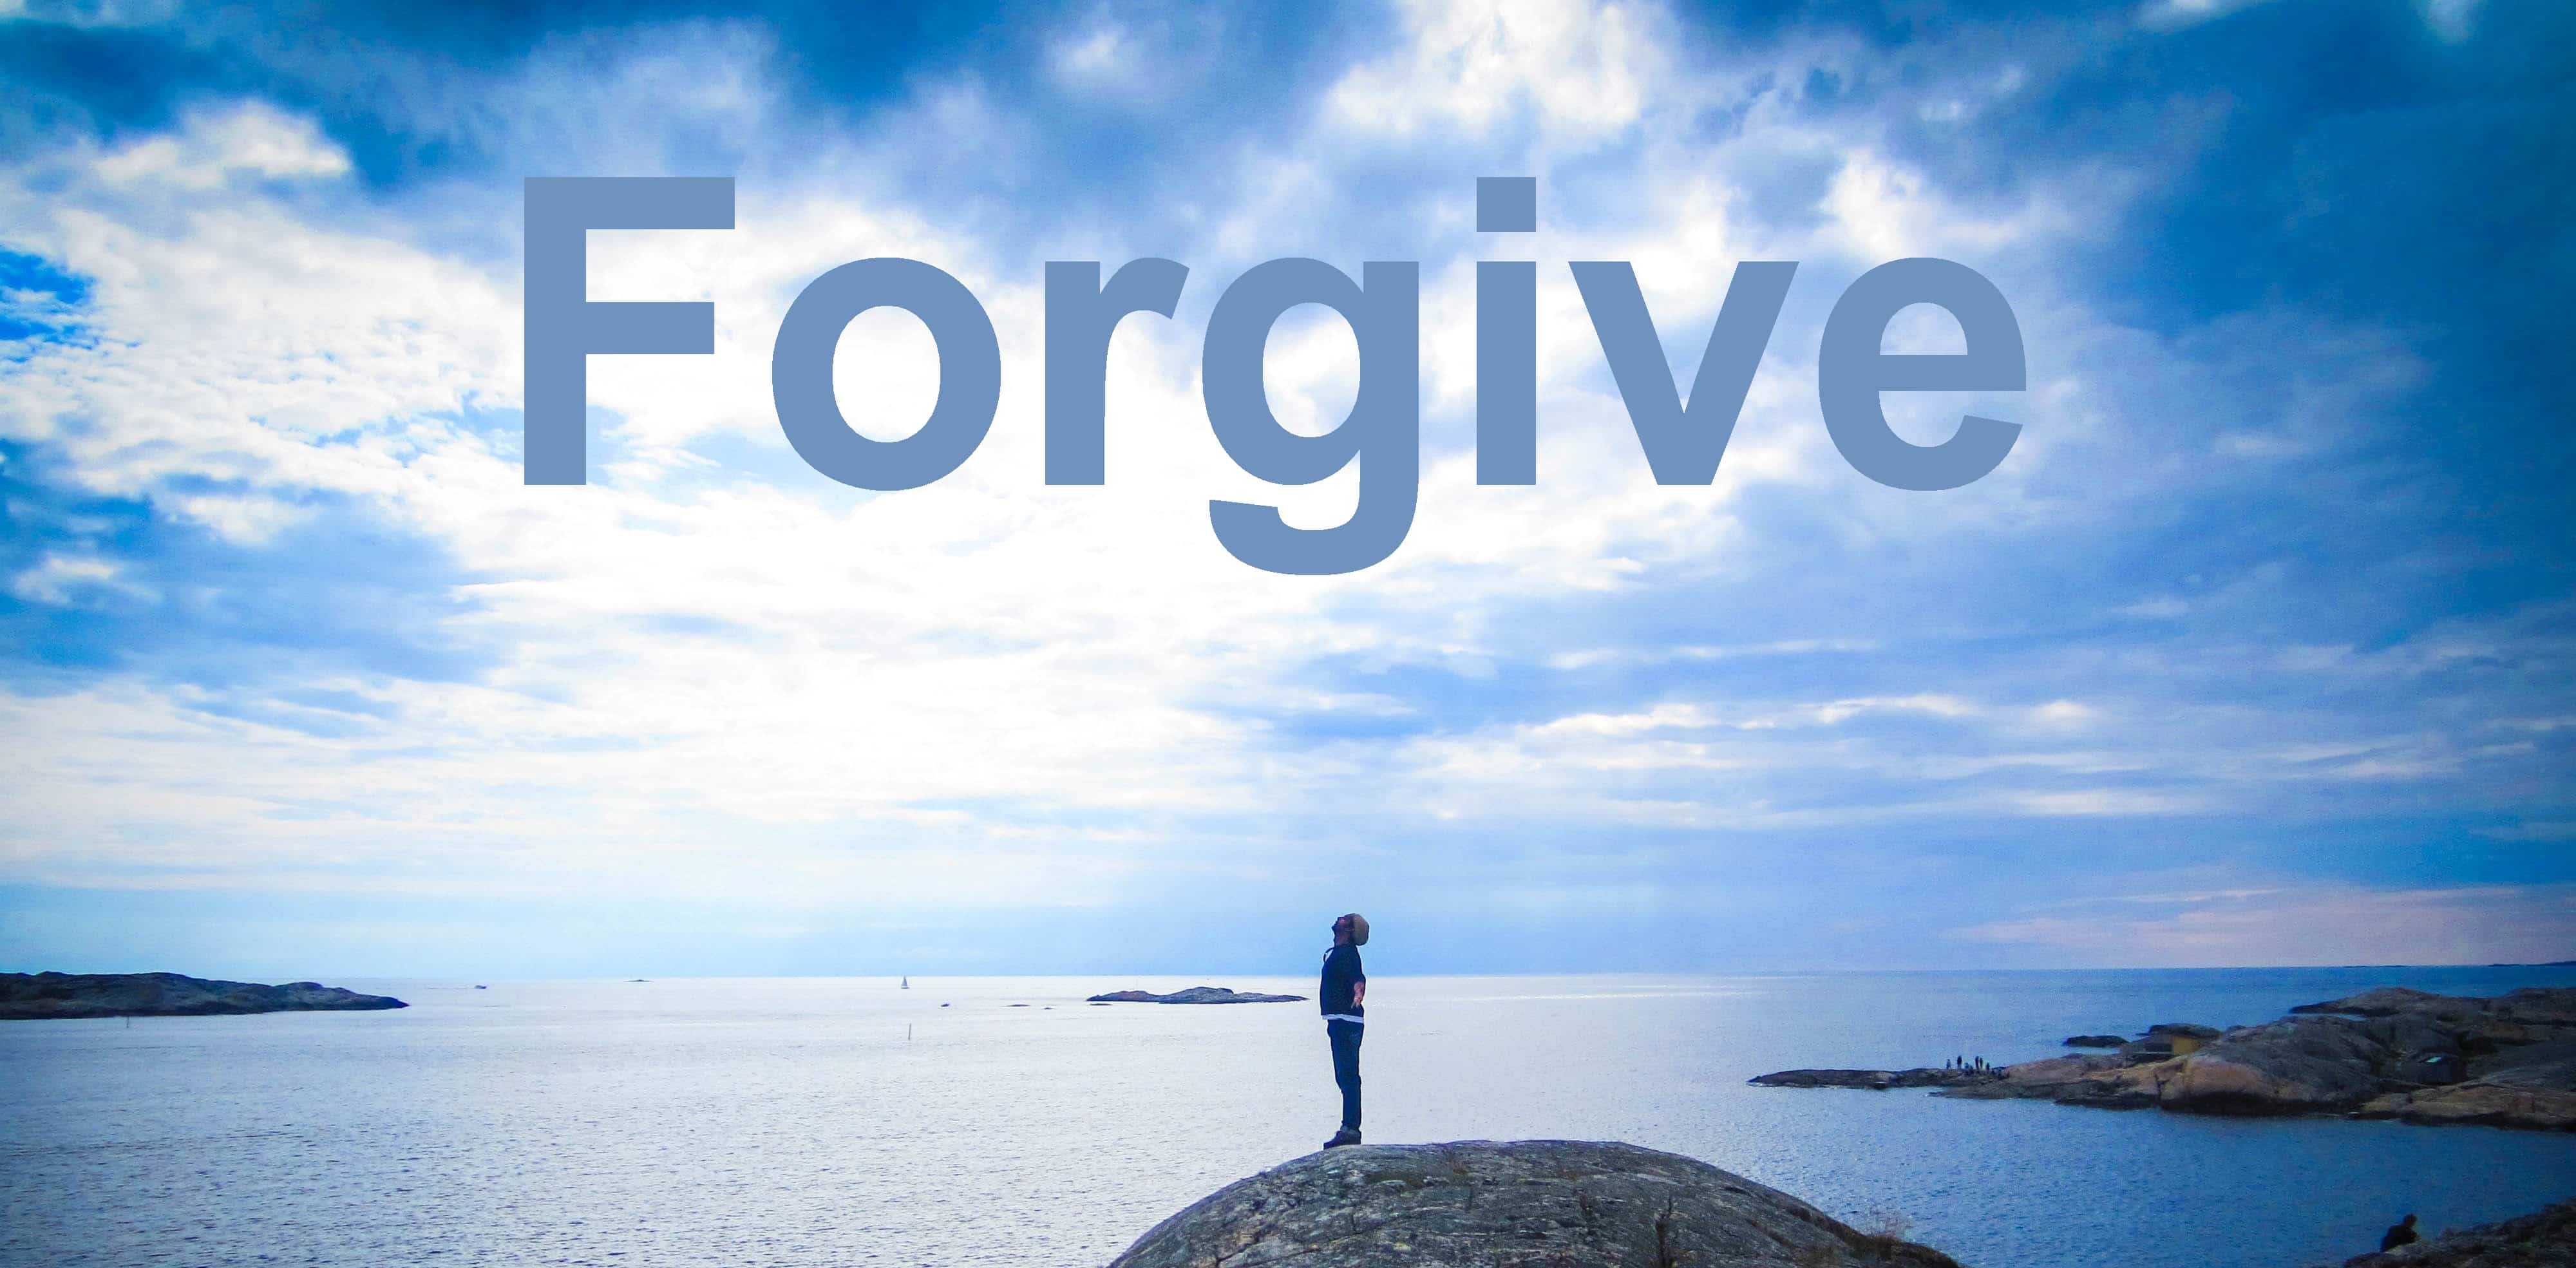 Làm sao để tha thứ nhưng không quên